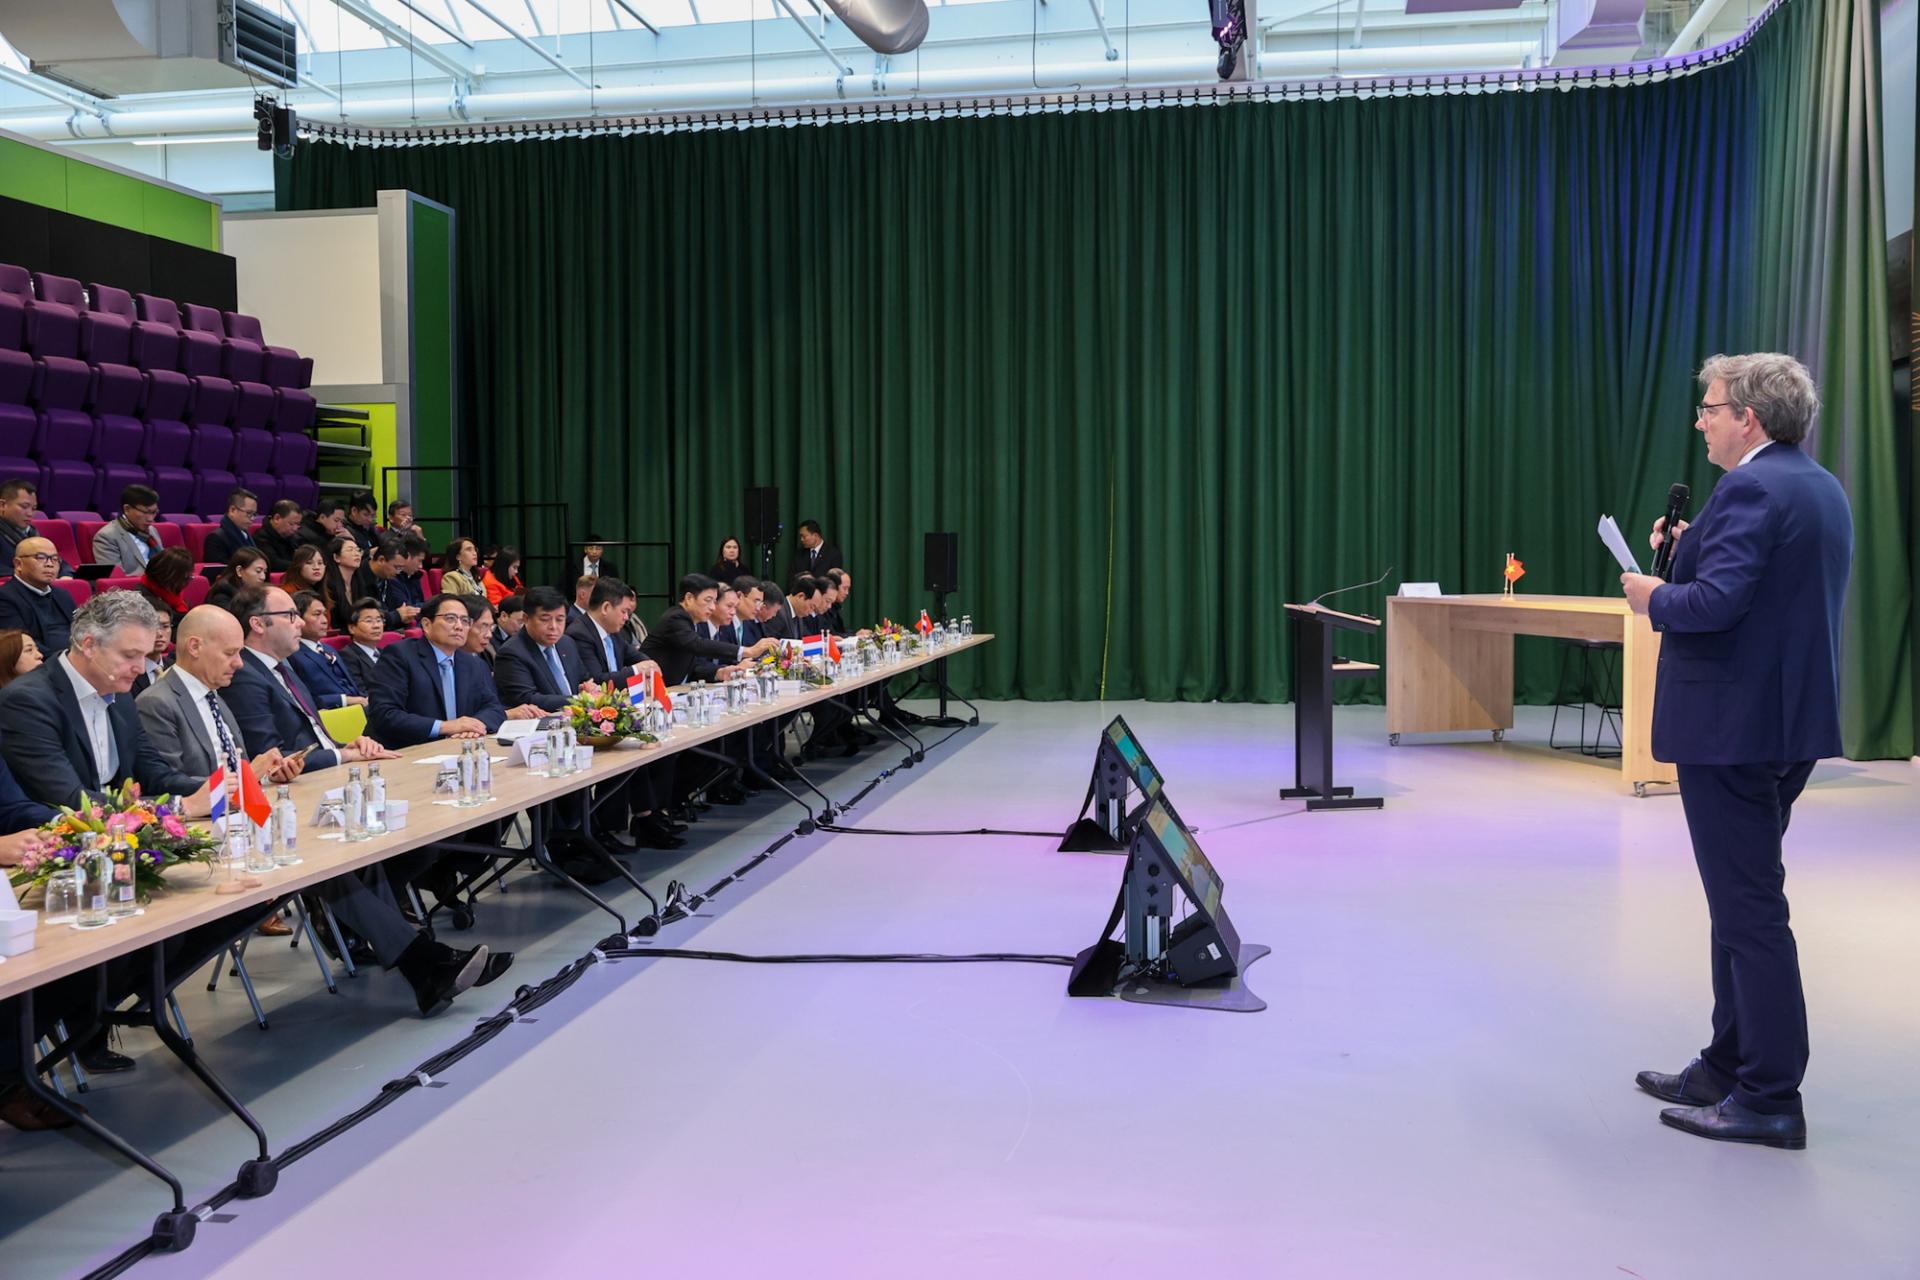 Thủ tướng và thành viên đoàn công tác dự cuộc trao đổi với một số doanh nghiệp Hà Lan về chủ đề Đổi mới sáng tạo và sản xuất công nghệ cao.